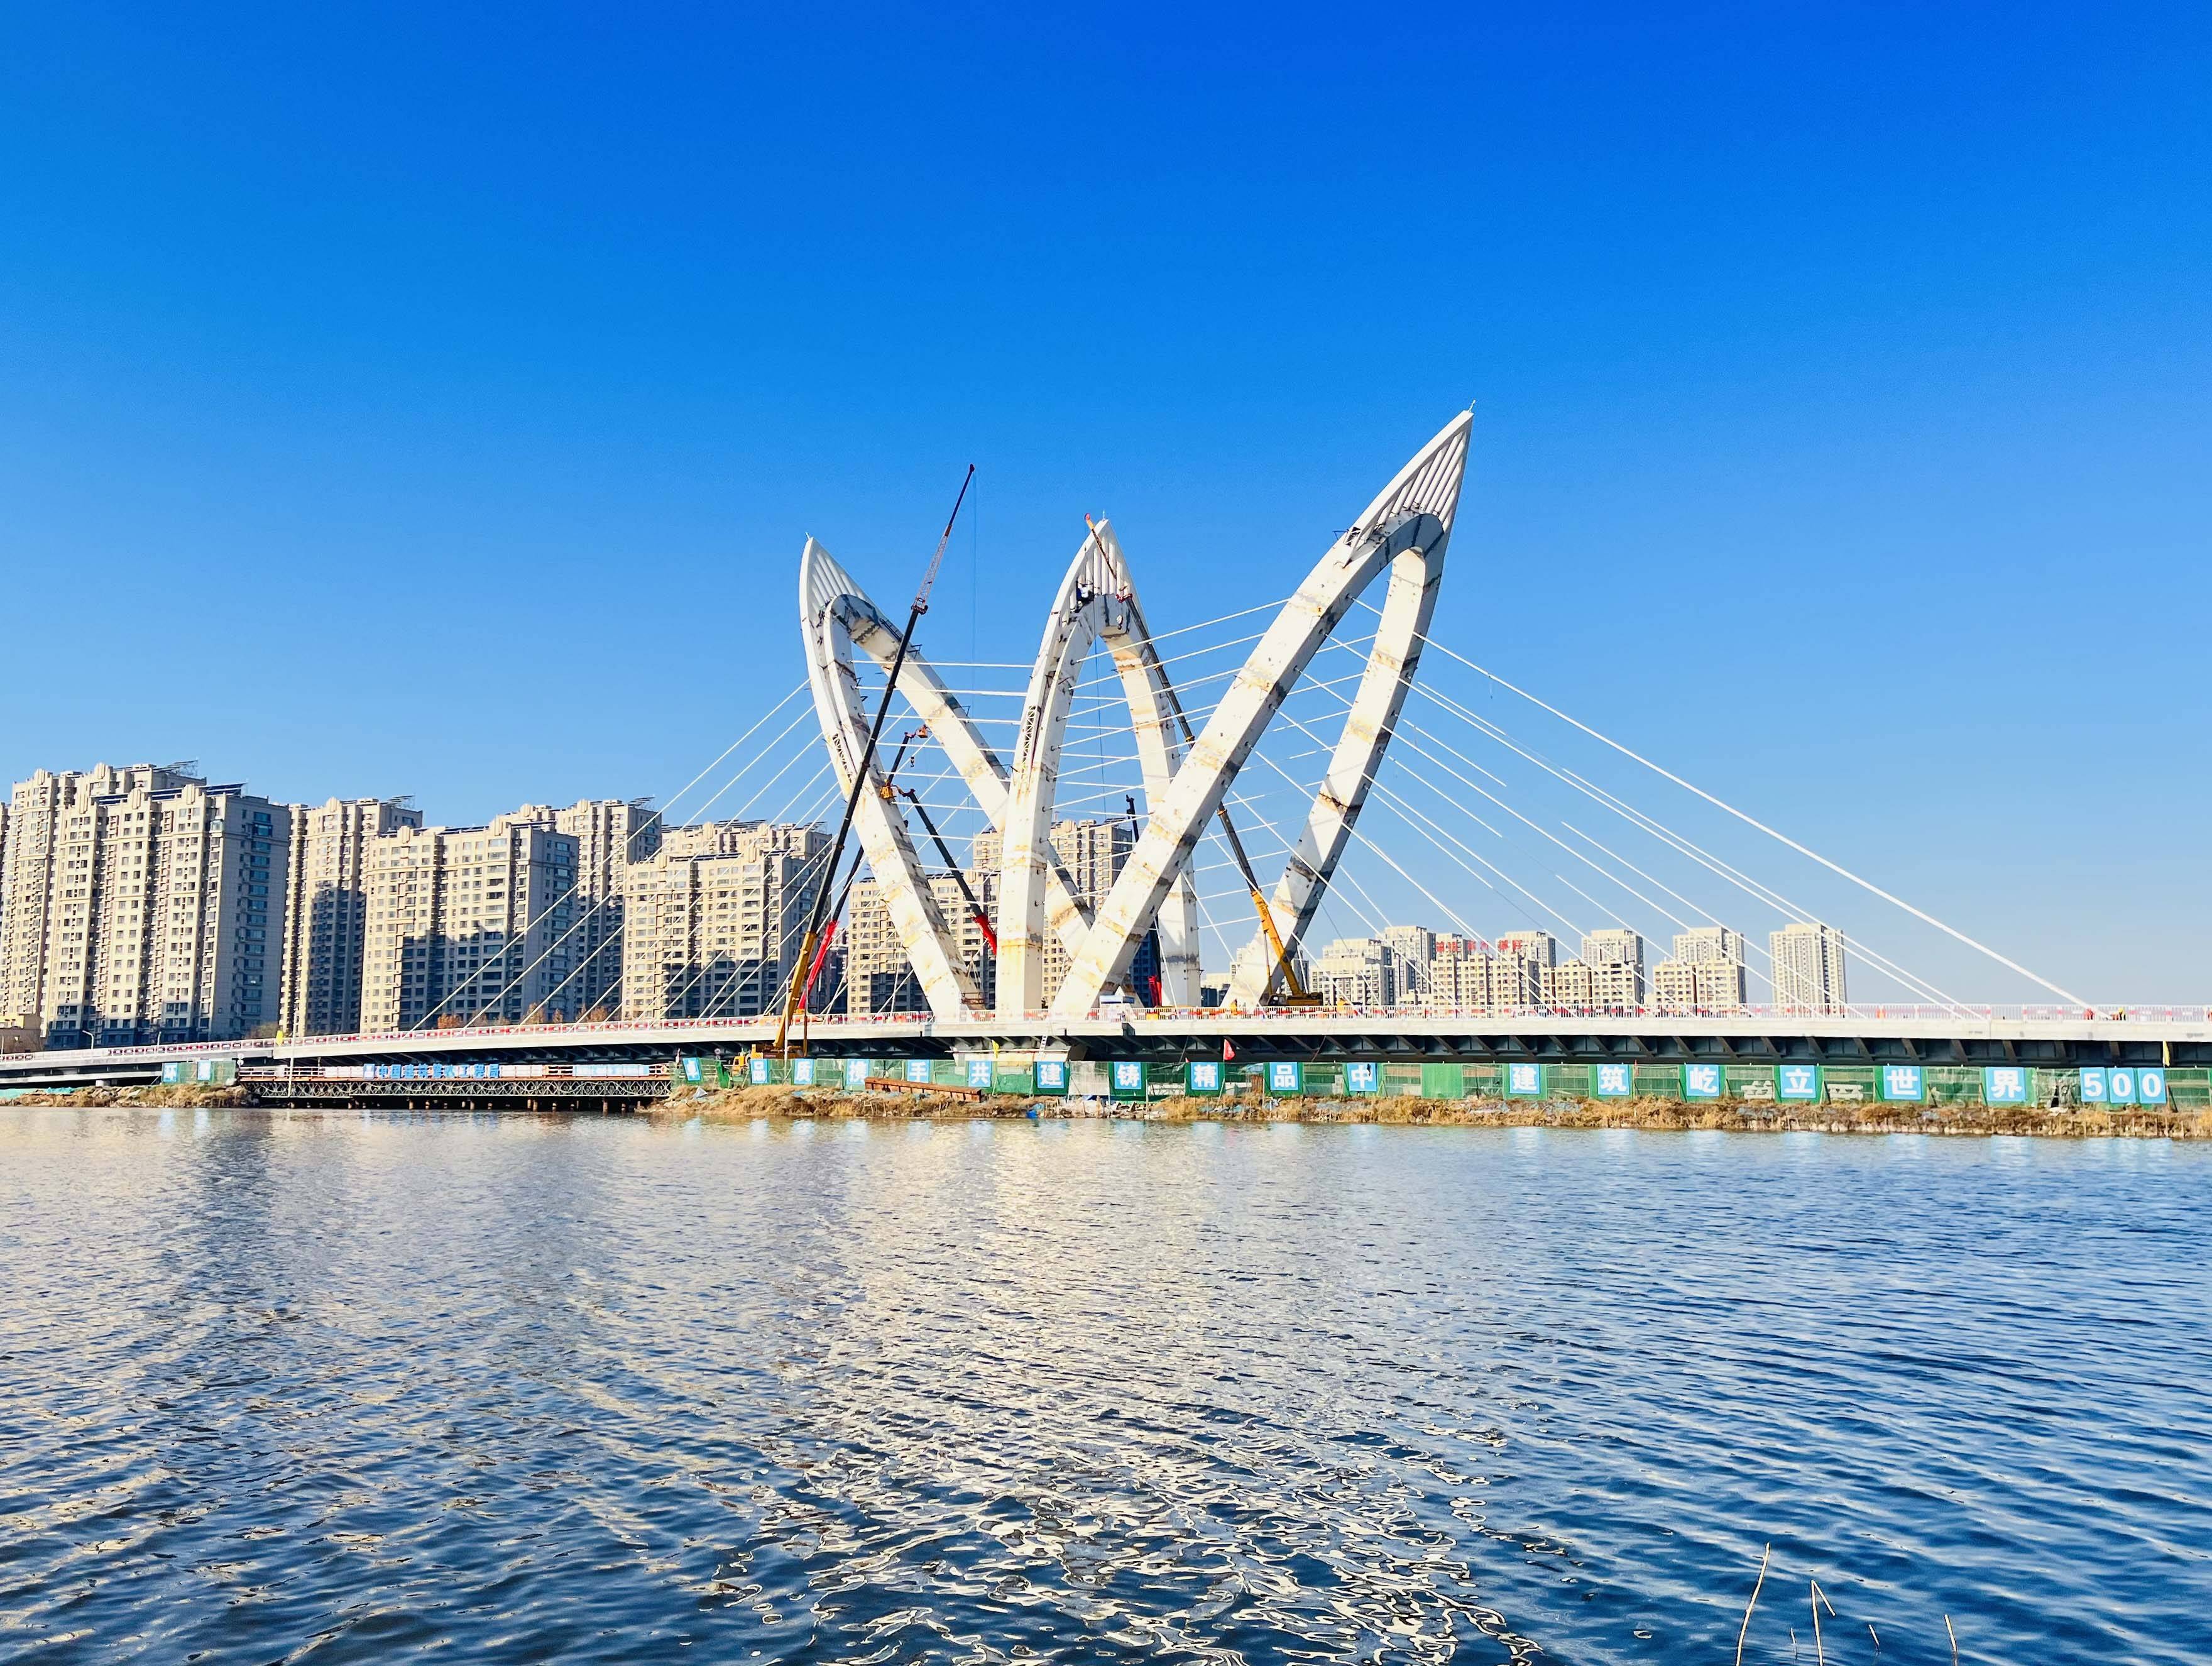 聊城兴华路跨徒骇河大桥主体完工 系国内首座千吨级碳纤维斜拉索车行桥